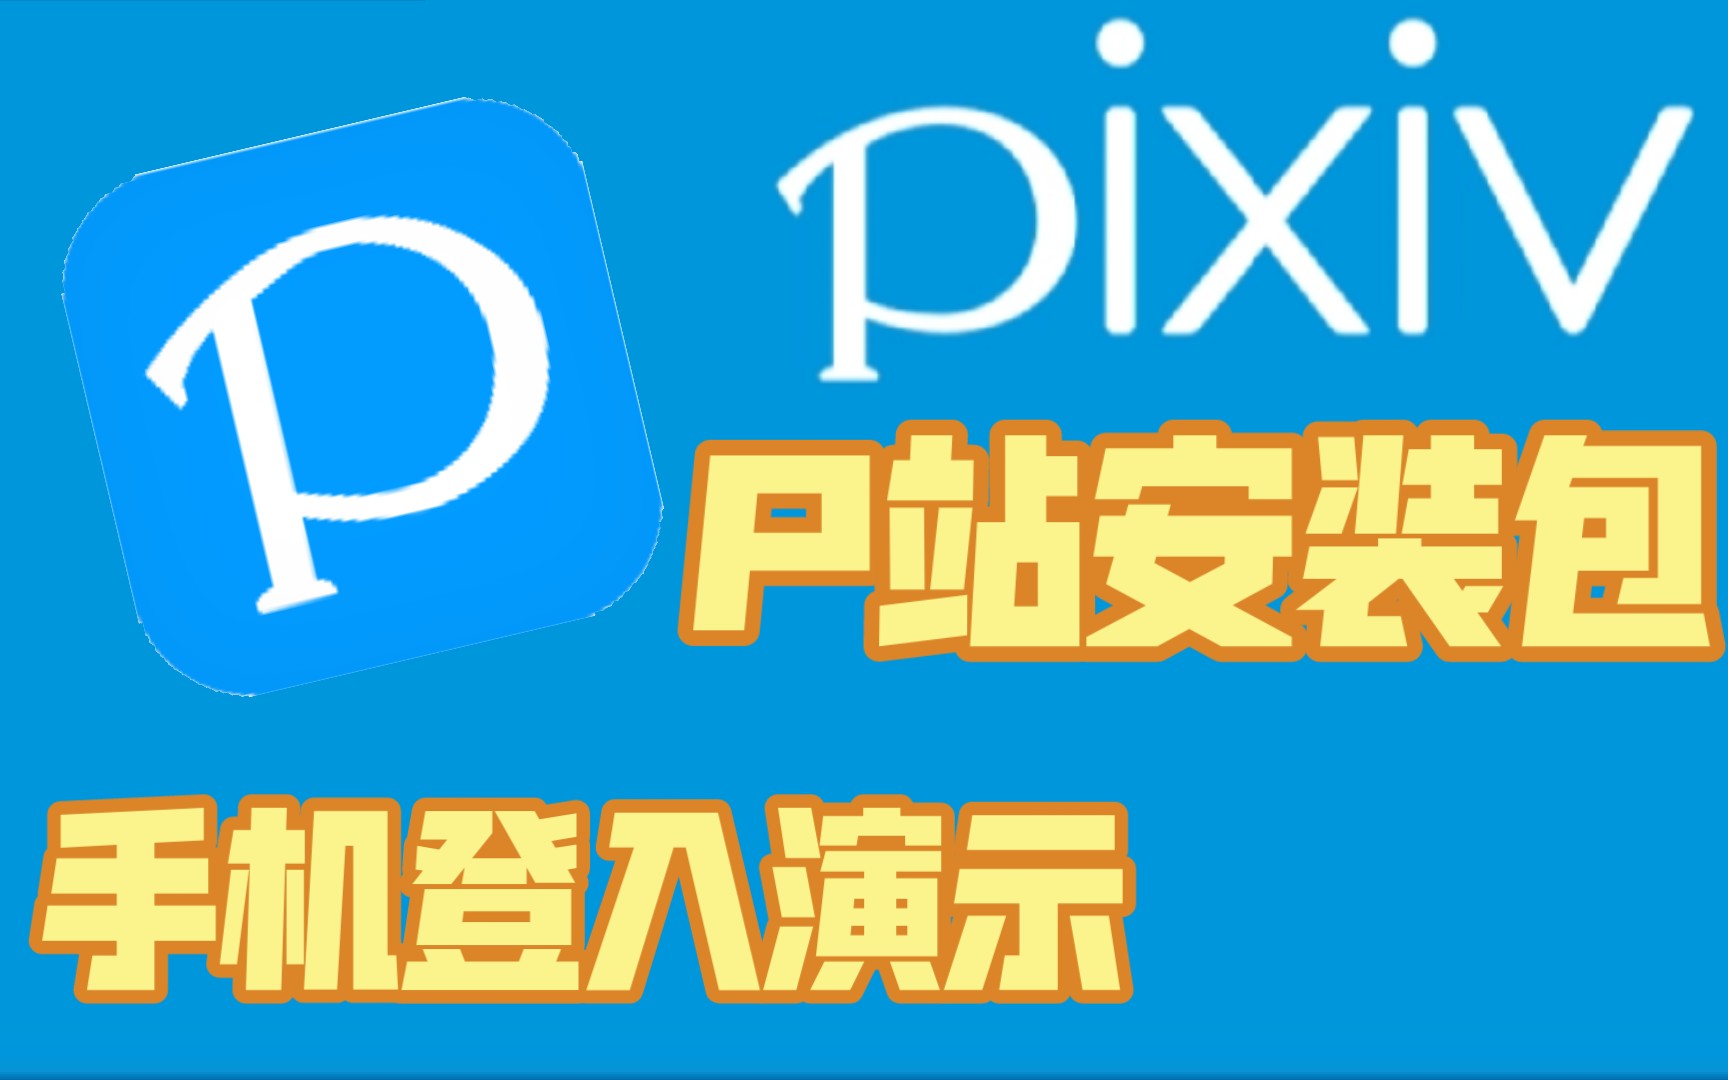 【pixiv】手机上p站安装包以及演示登入p站